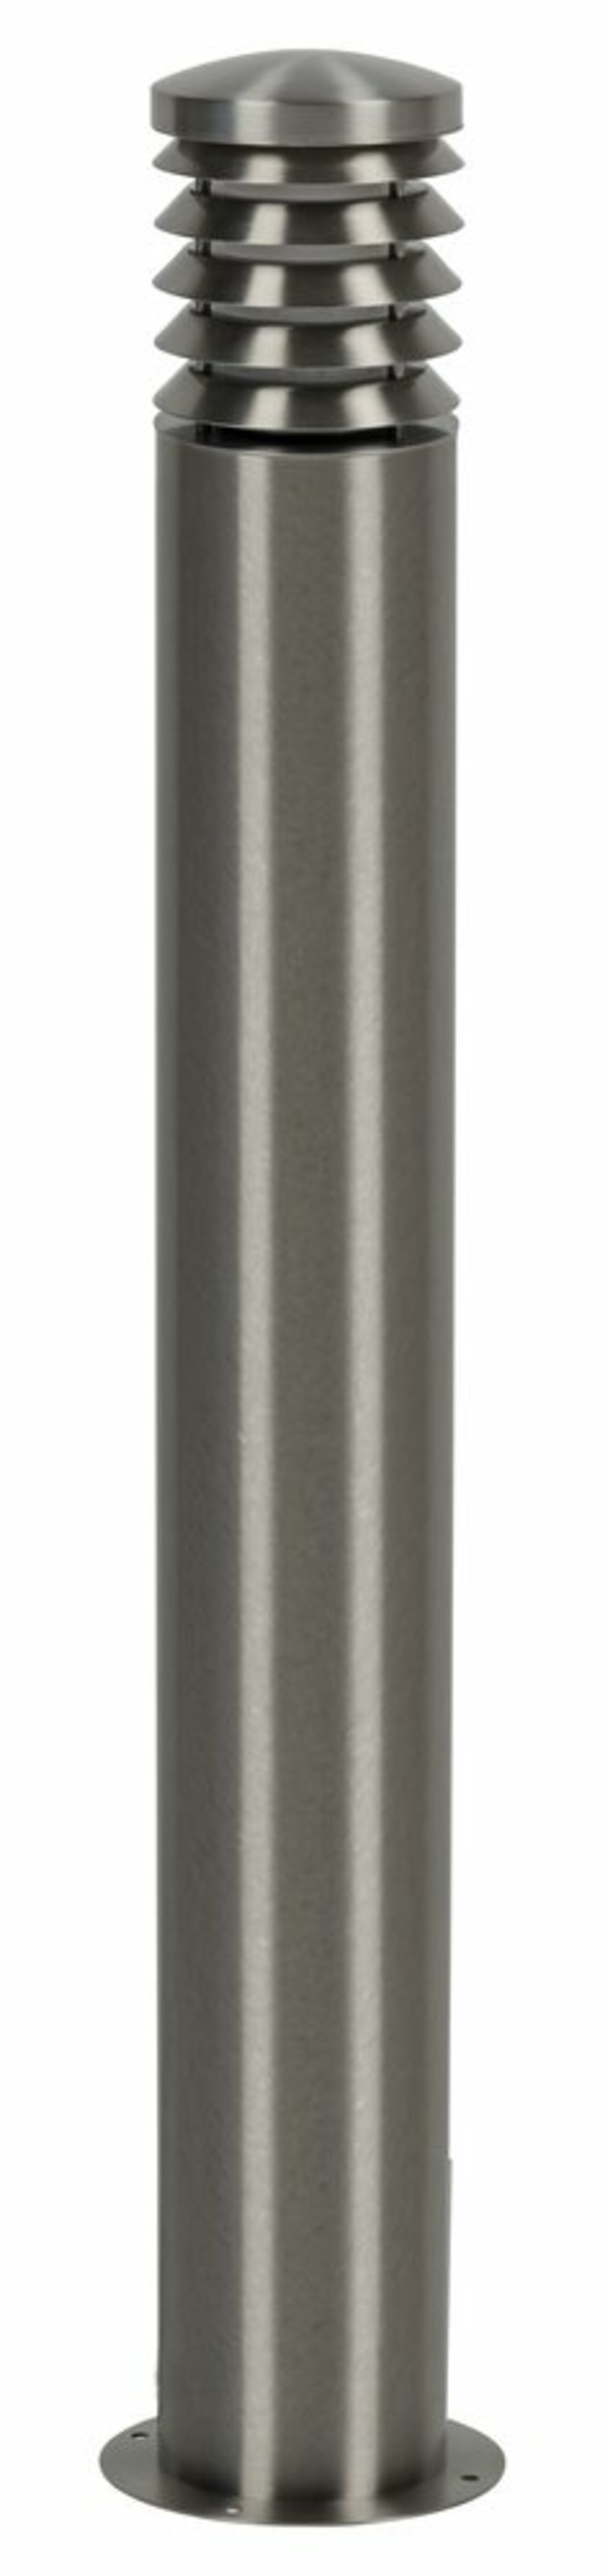 HEITRONIC sloupové svítidlo CALYPSO 1200mm 37238